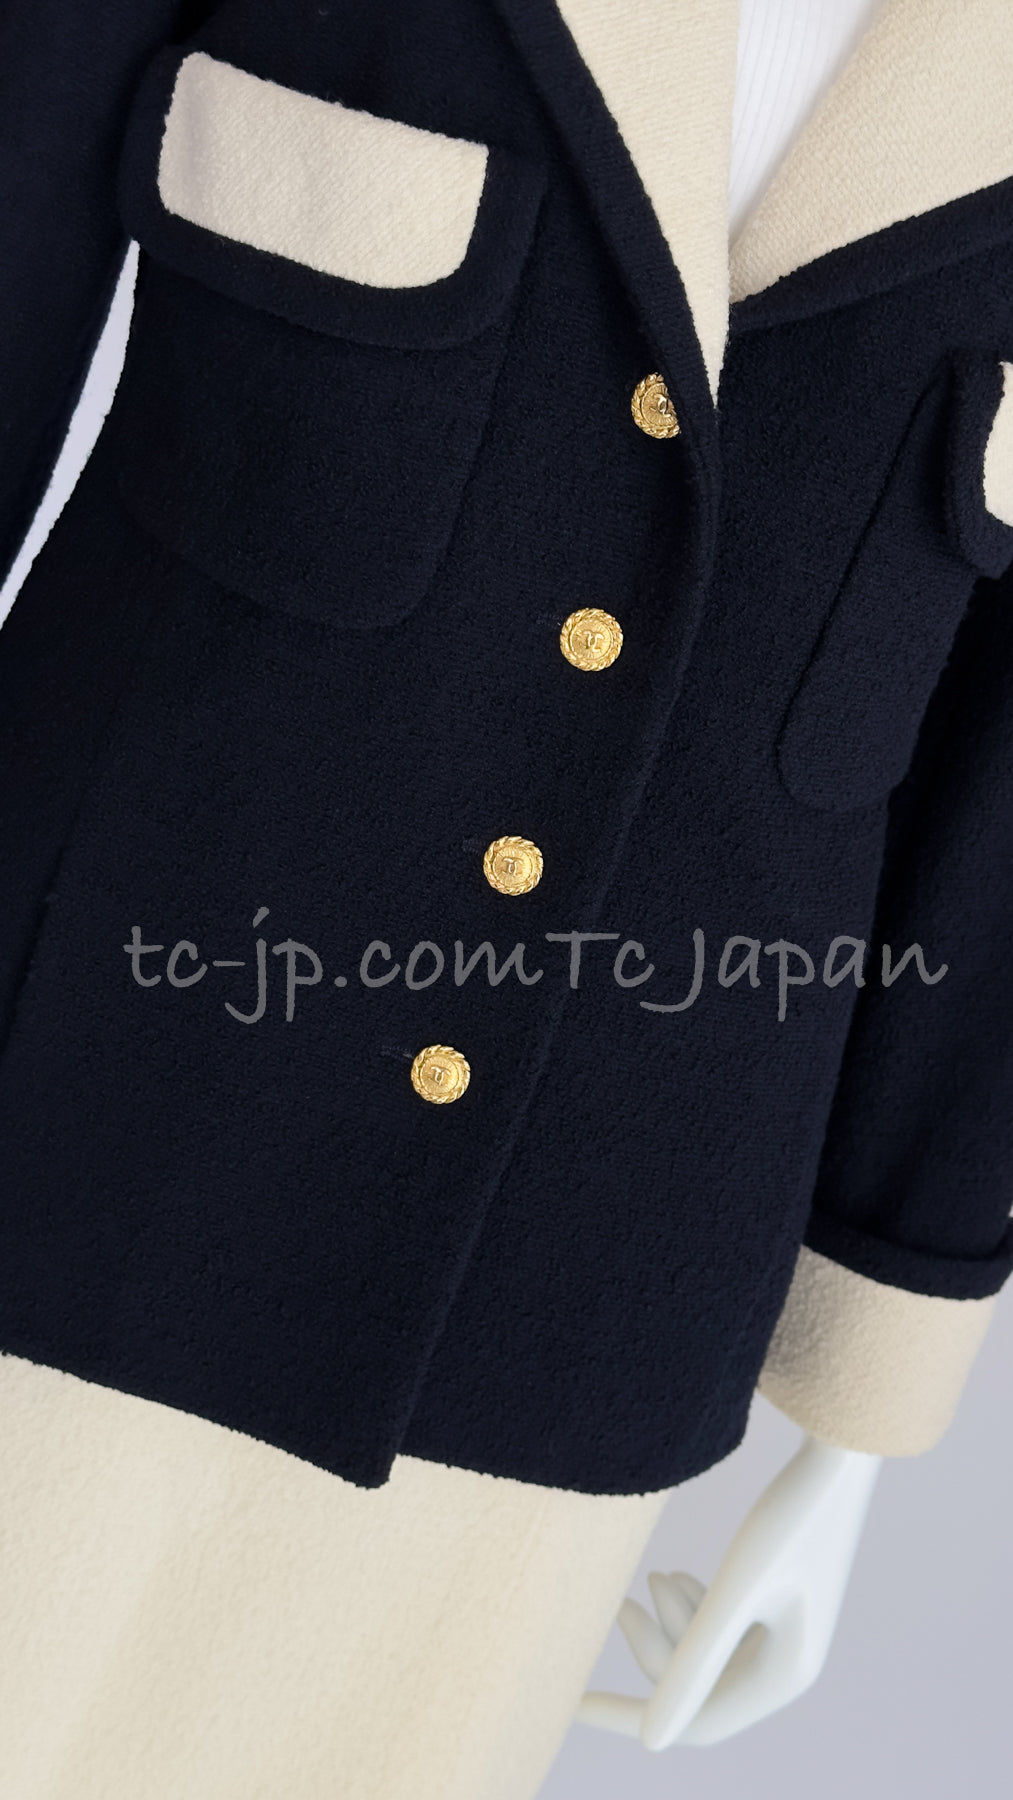 CHANEL 89S Vintage Dark Navy Ivory Creme Tweed Jacket Skirt Suit 38 40 シャネル ヴィンテージ・ダークネイビー・アイボリー・ツイード・ジャケット・スカート・スーツ